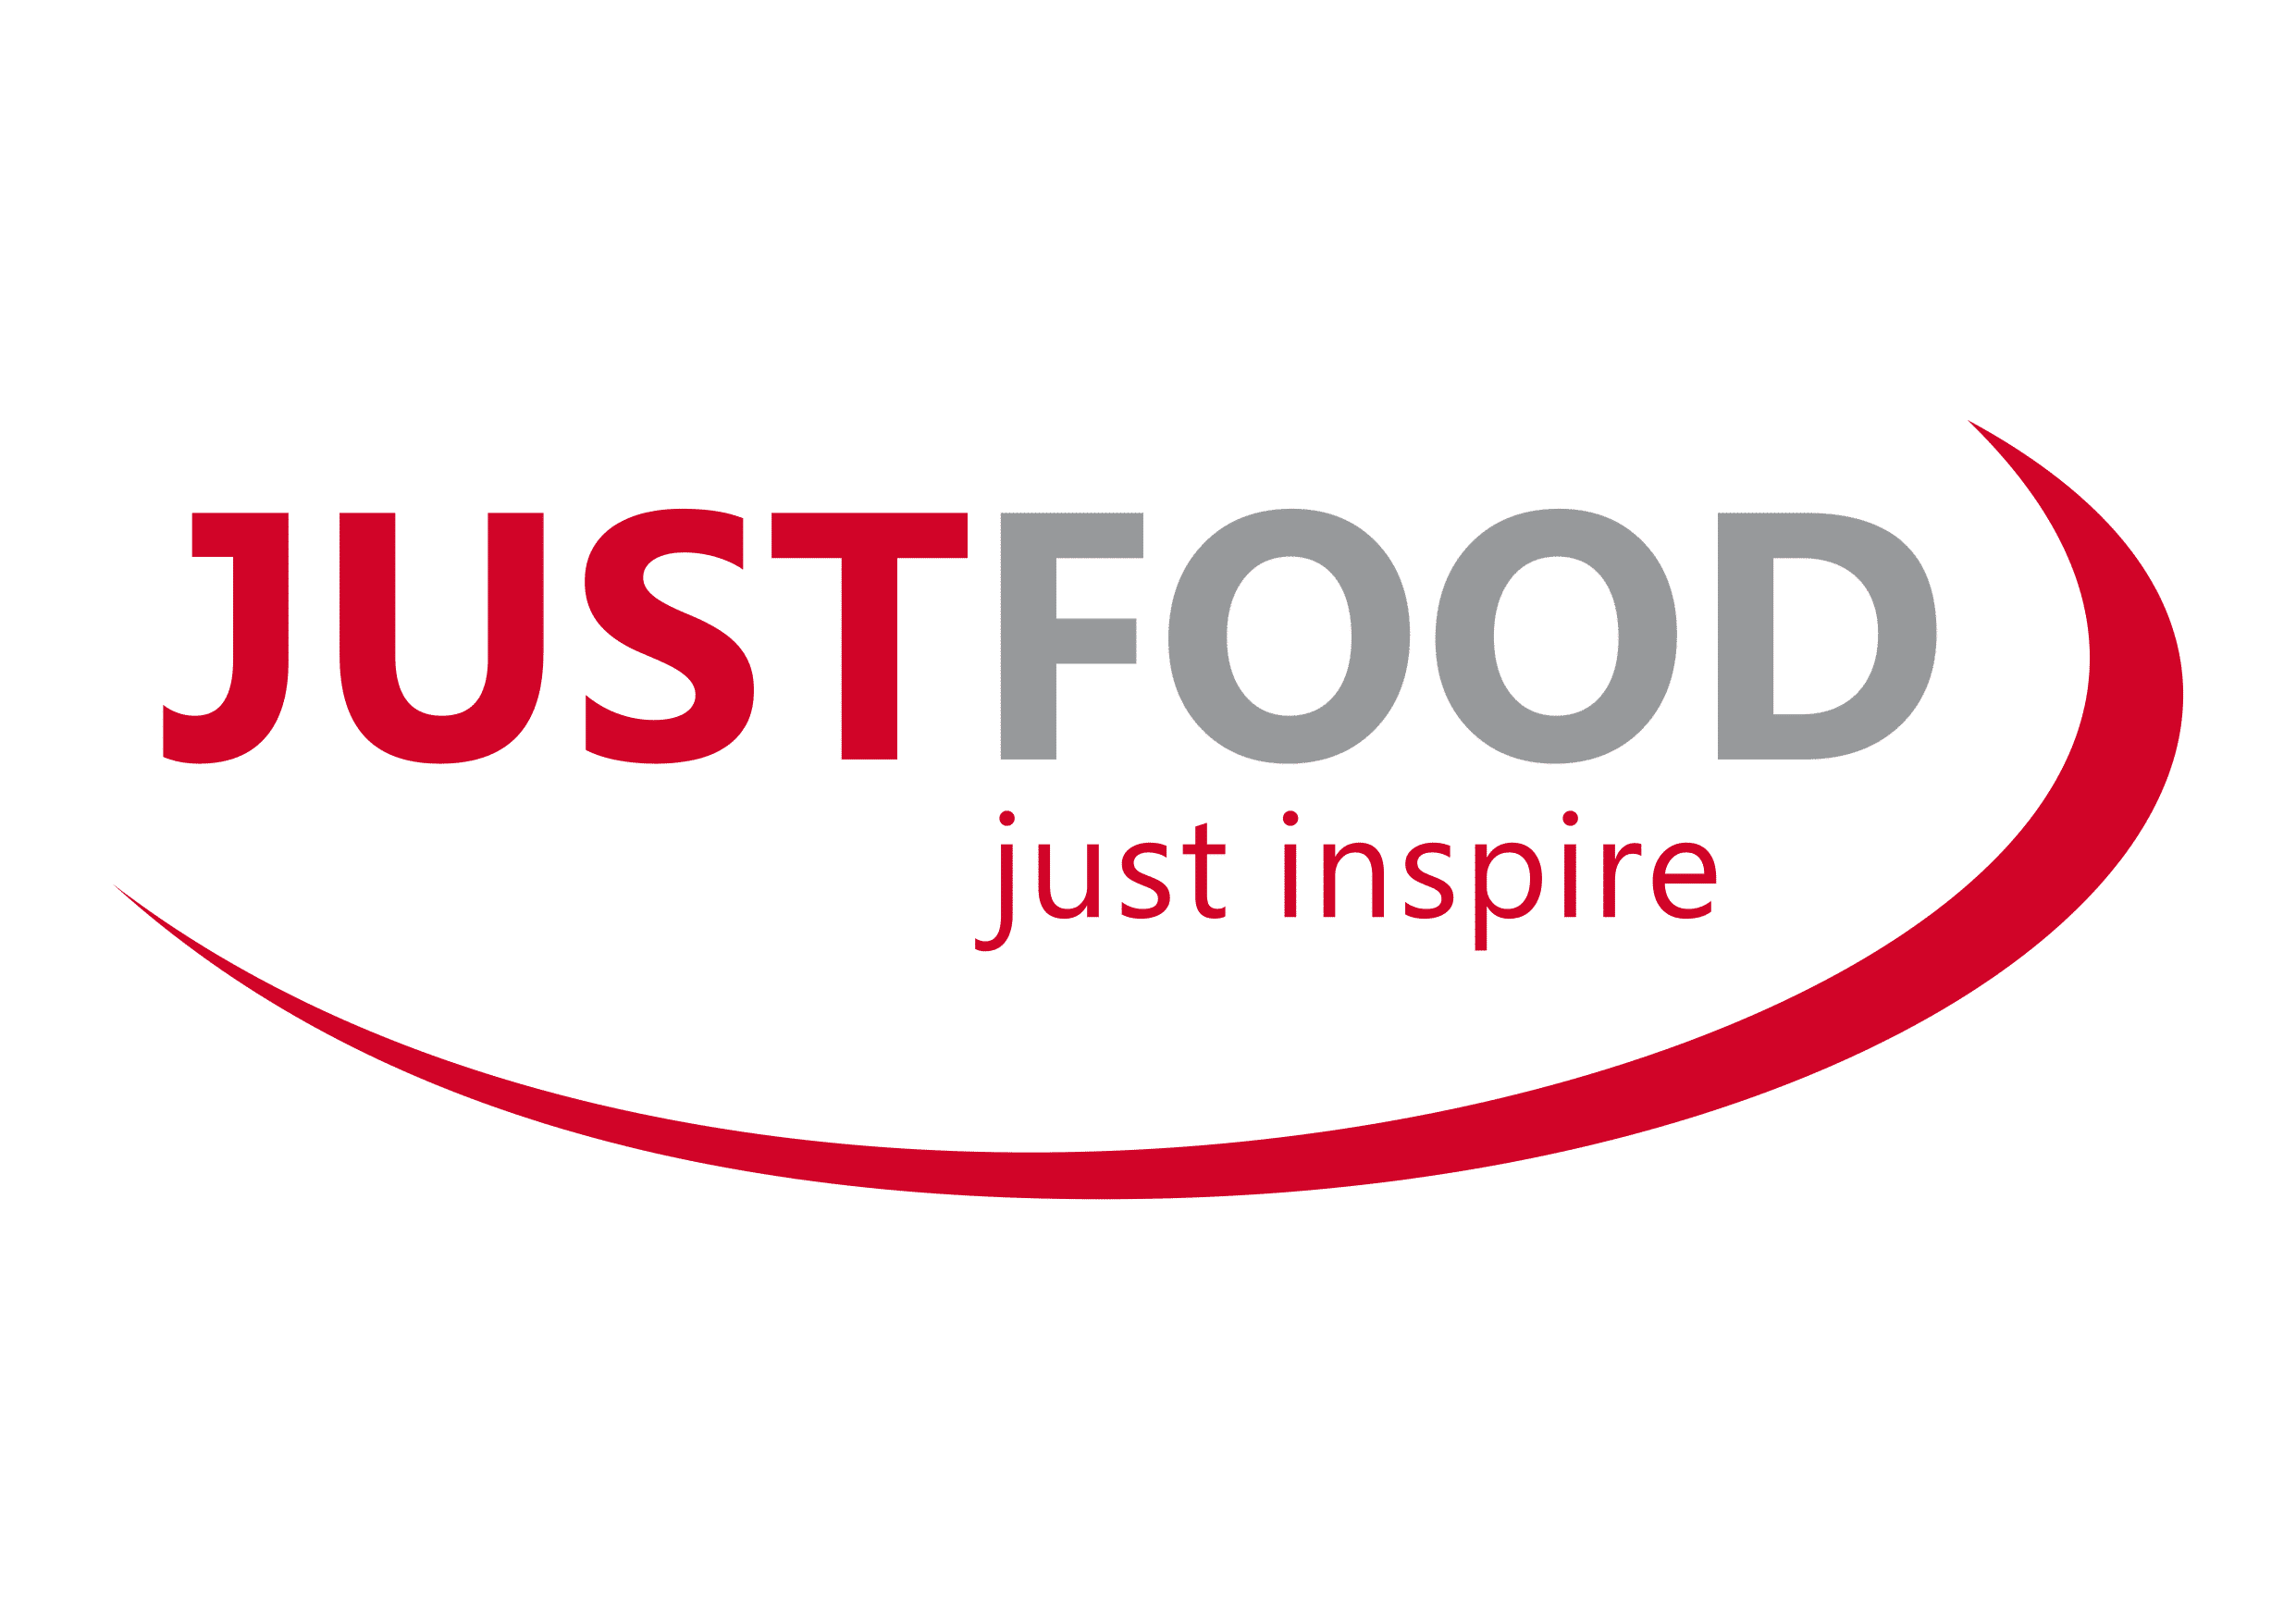 Justfood